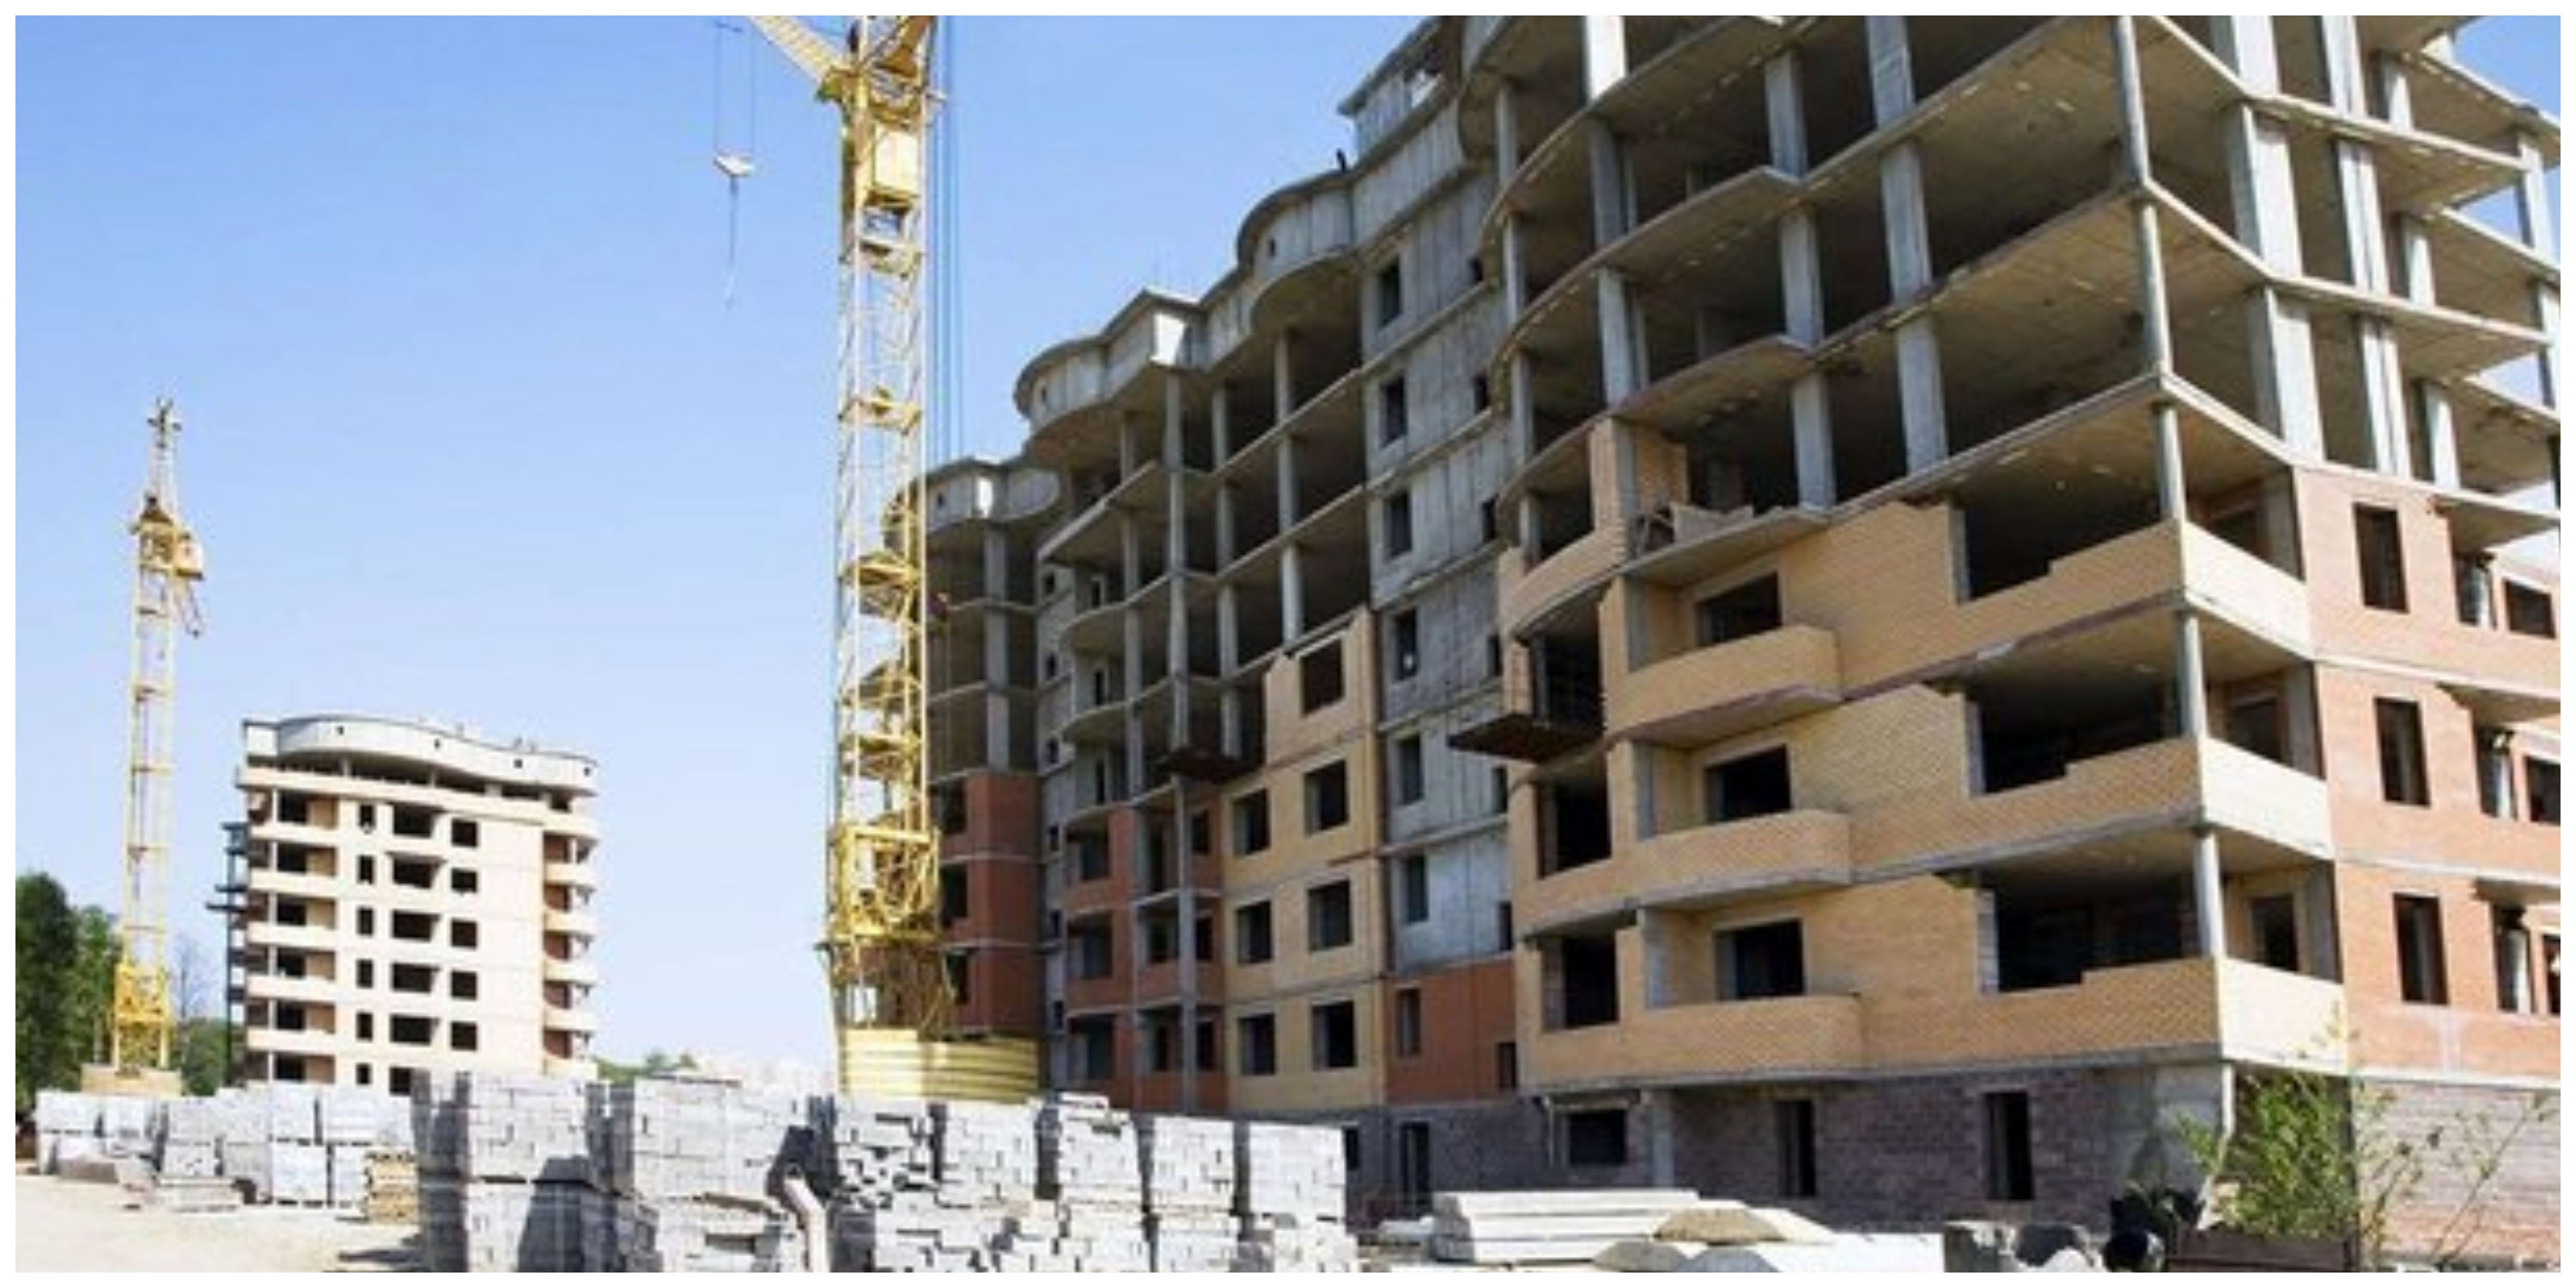 مجوز افزایش تعداد طبقات خانه سازی در تهران یعنی تکرار اتفاقات تلخ قبلی